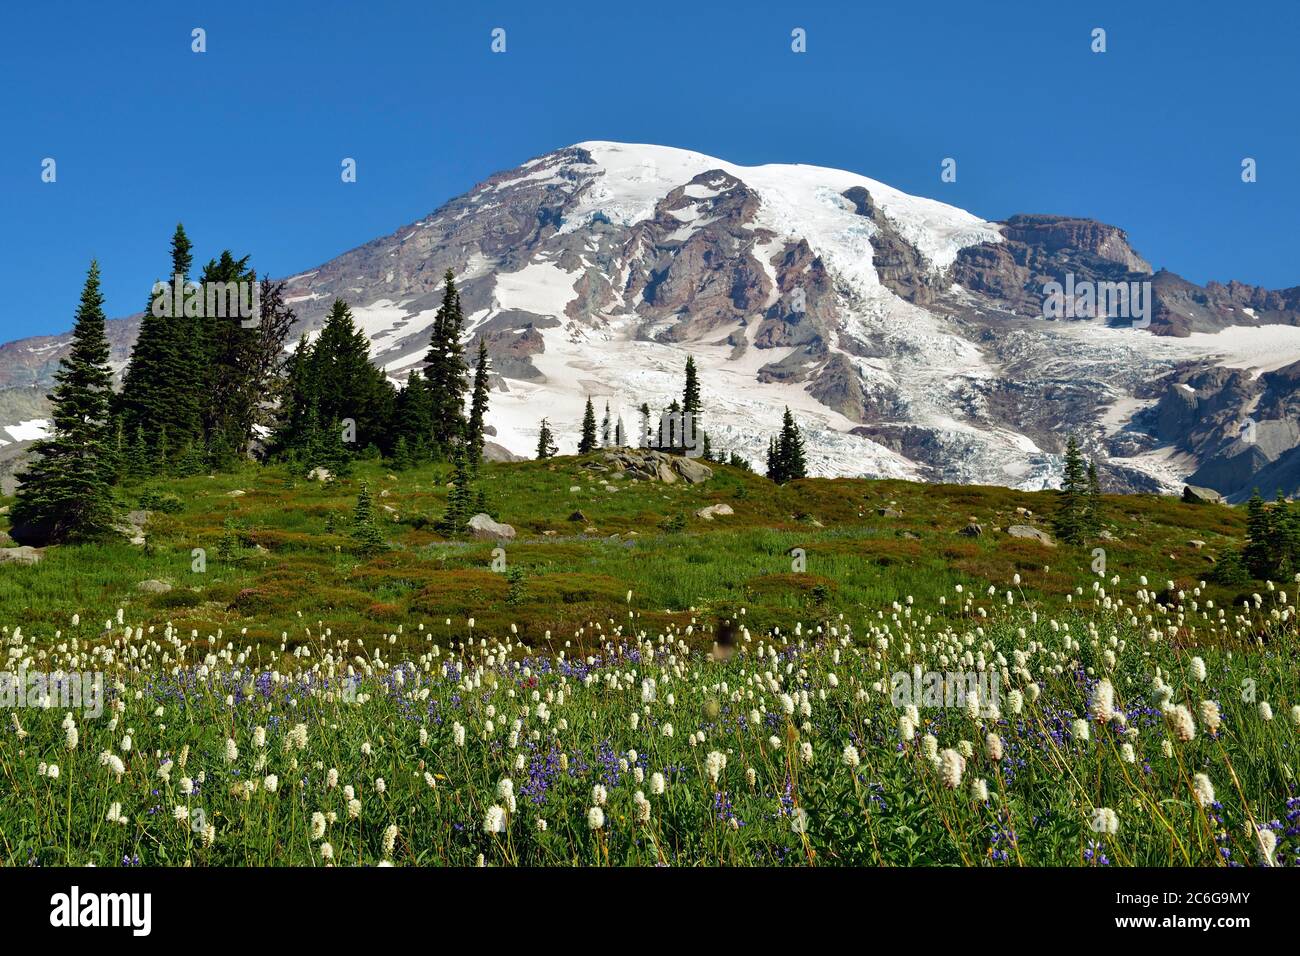 Summit Mount Rainier, Parc national du Mont Rainier, Cascade Range, Cascade Mountains, Washington, Nord-Ouest du Pacifique, États-Unis, Amérique du Nord Banque D'Images